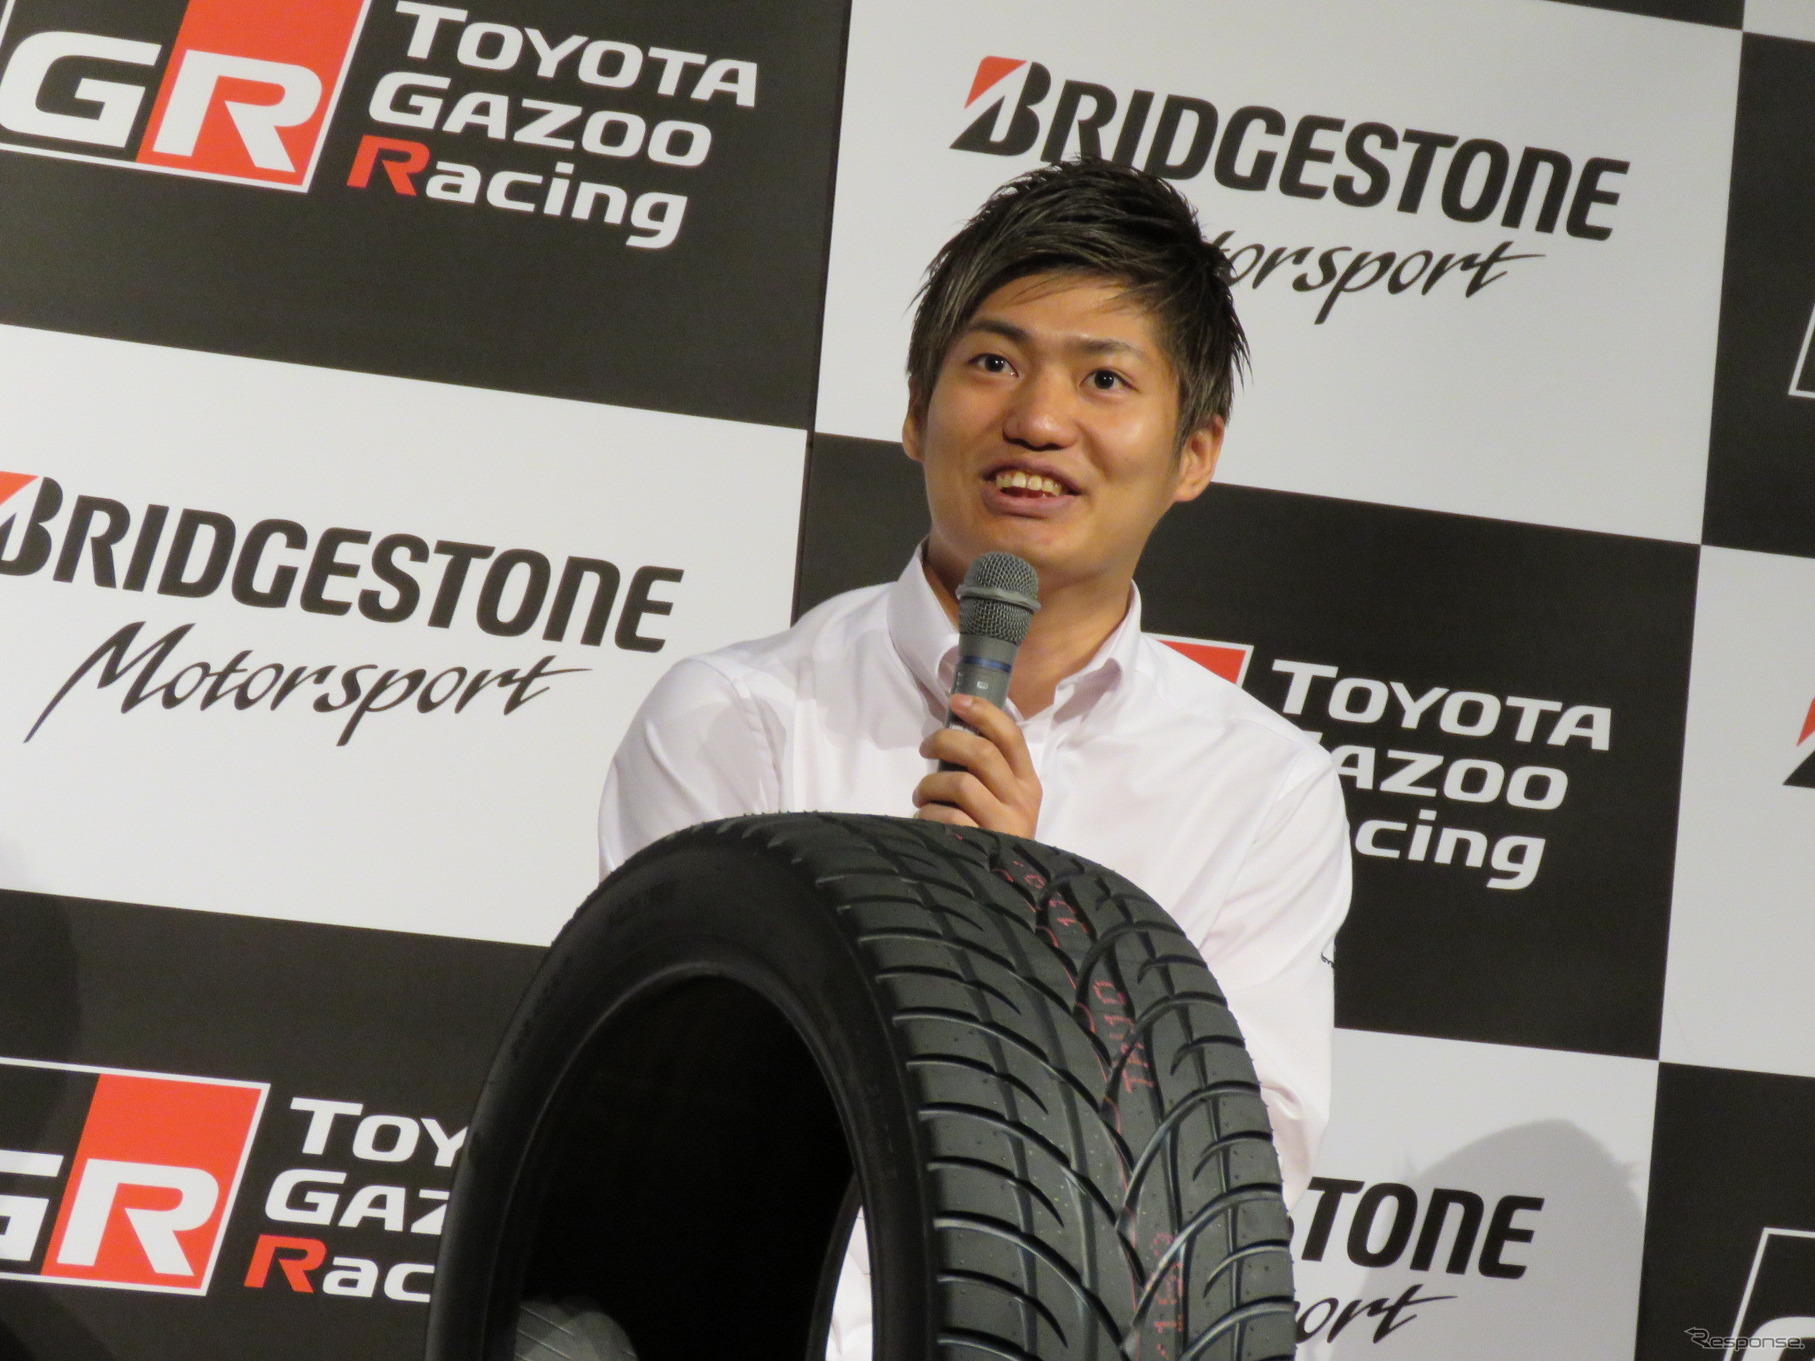 ブリヂストンとともにニュル24時間に参戦する、トヨタGAZOOレーシングの大嶋和也。